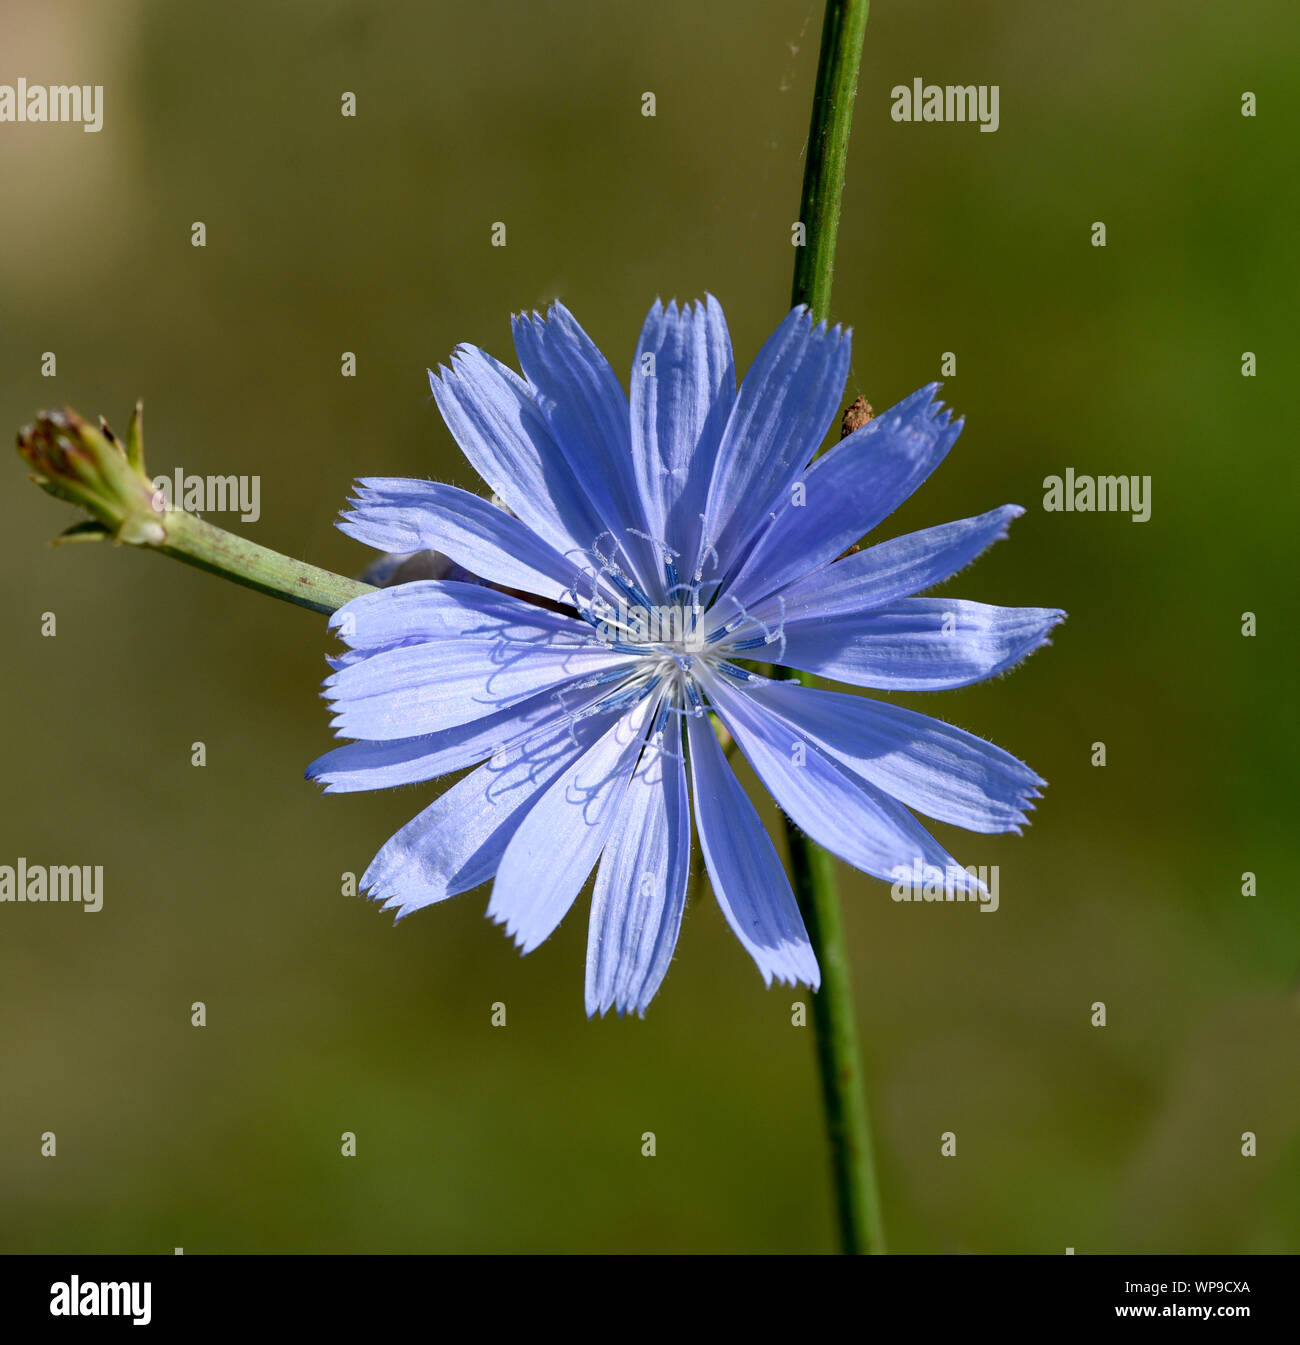 , Wegwarte Cichorium intybus, ist eine Wild- und Heilpflanze mit blauen Blueten. Die blueten sind essbar. Chicorée, Cichorium intybus, ist ein wildes und Med Stockfoto